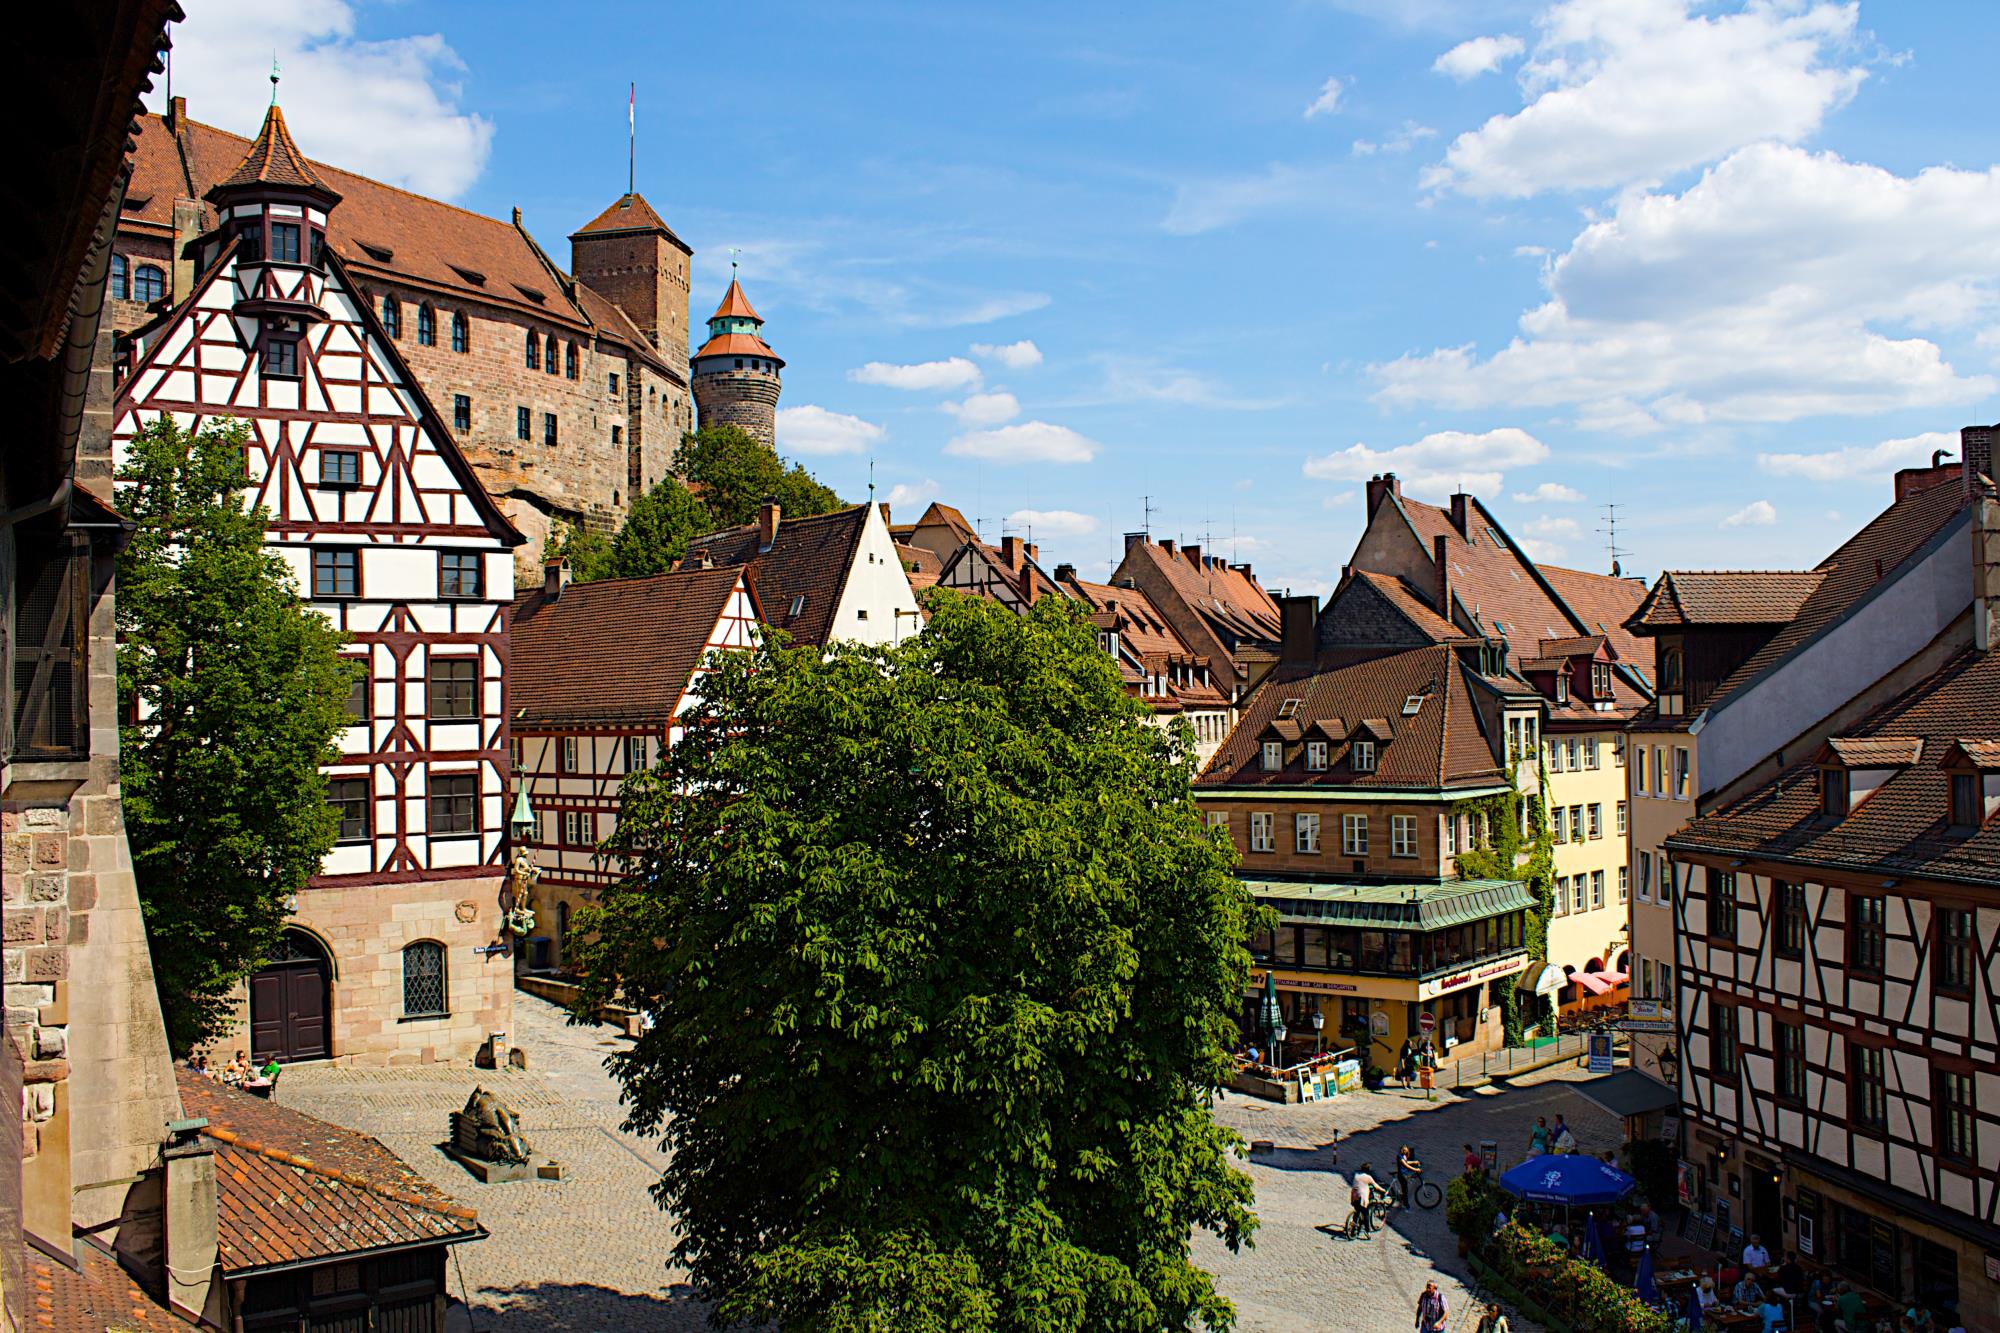 Nuremberg Travel Guide: History Reconstructed In Nuremberg